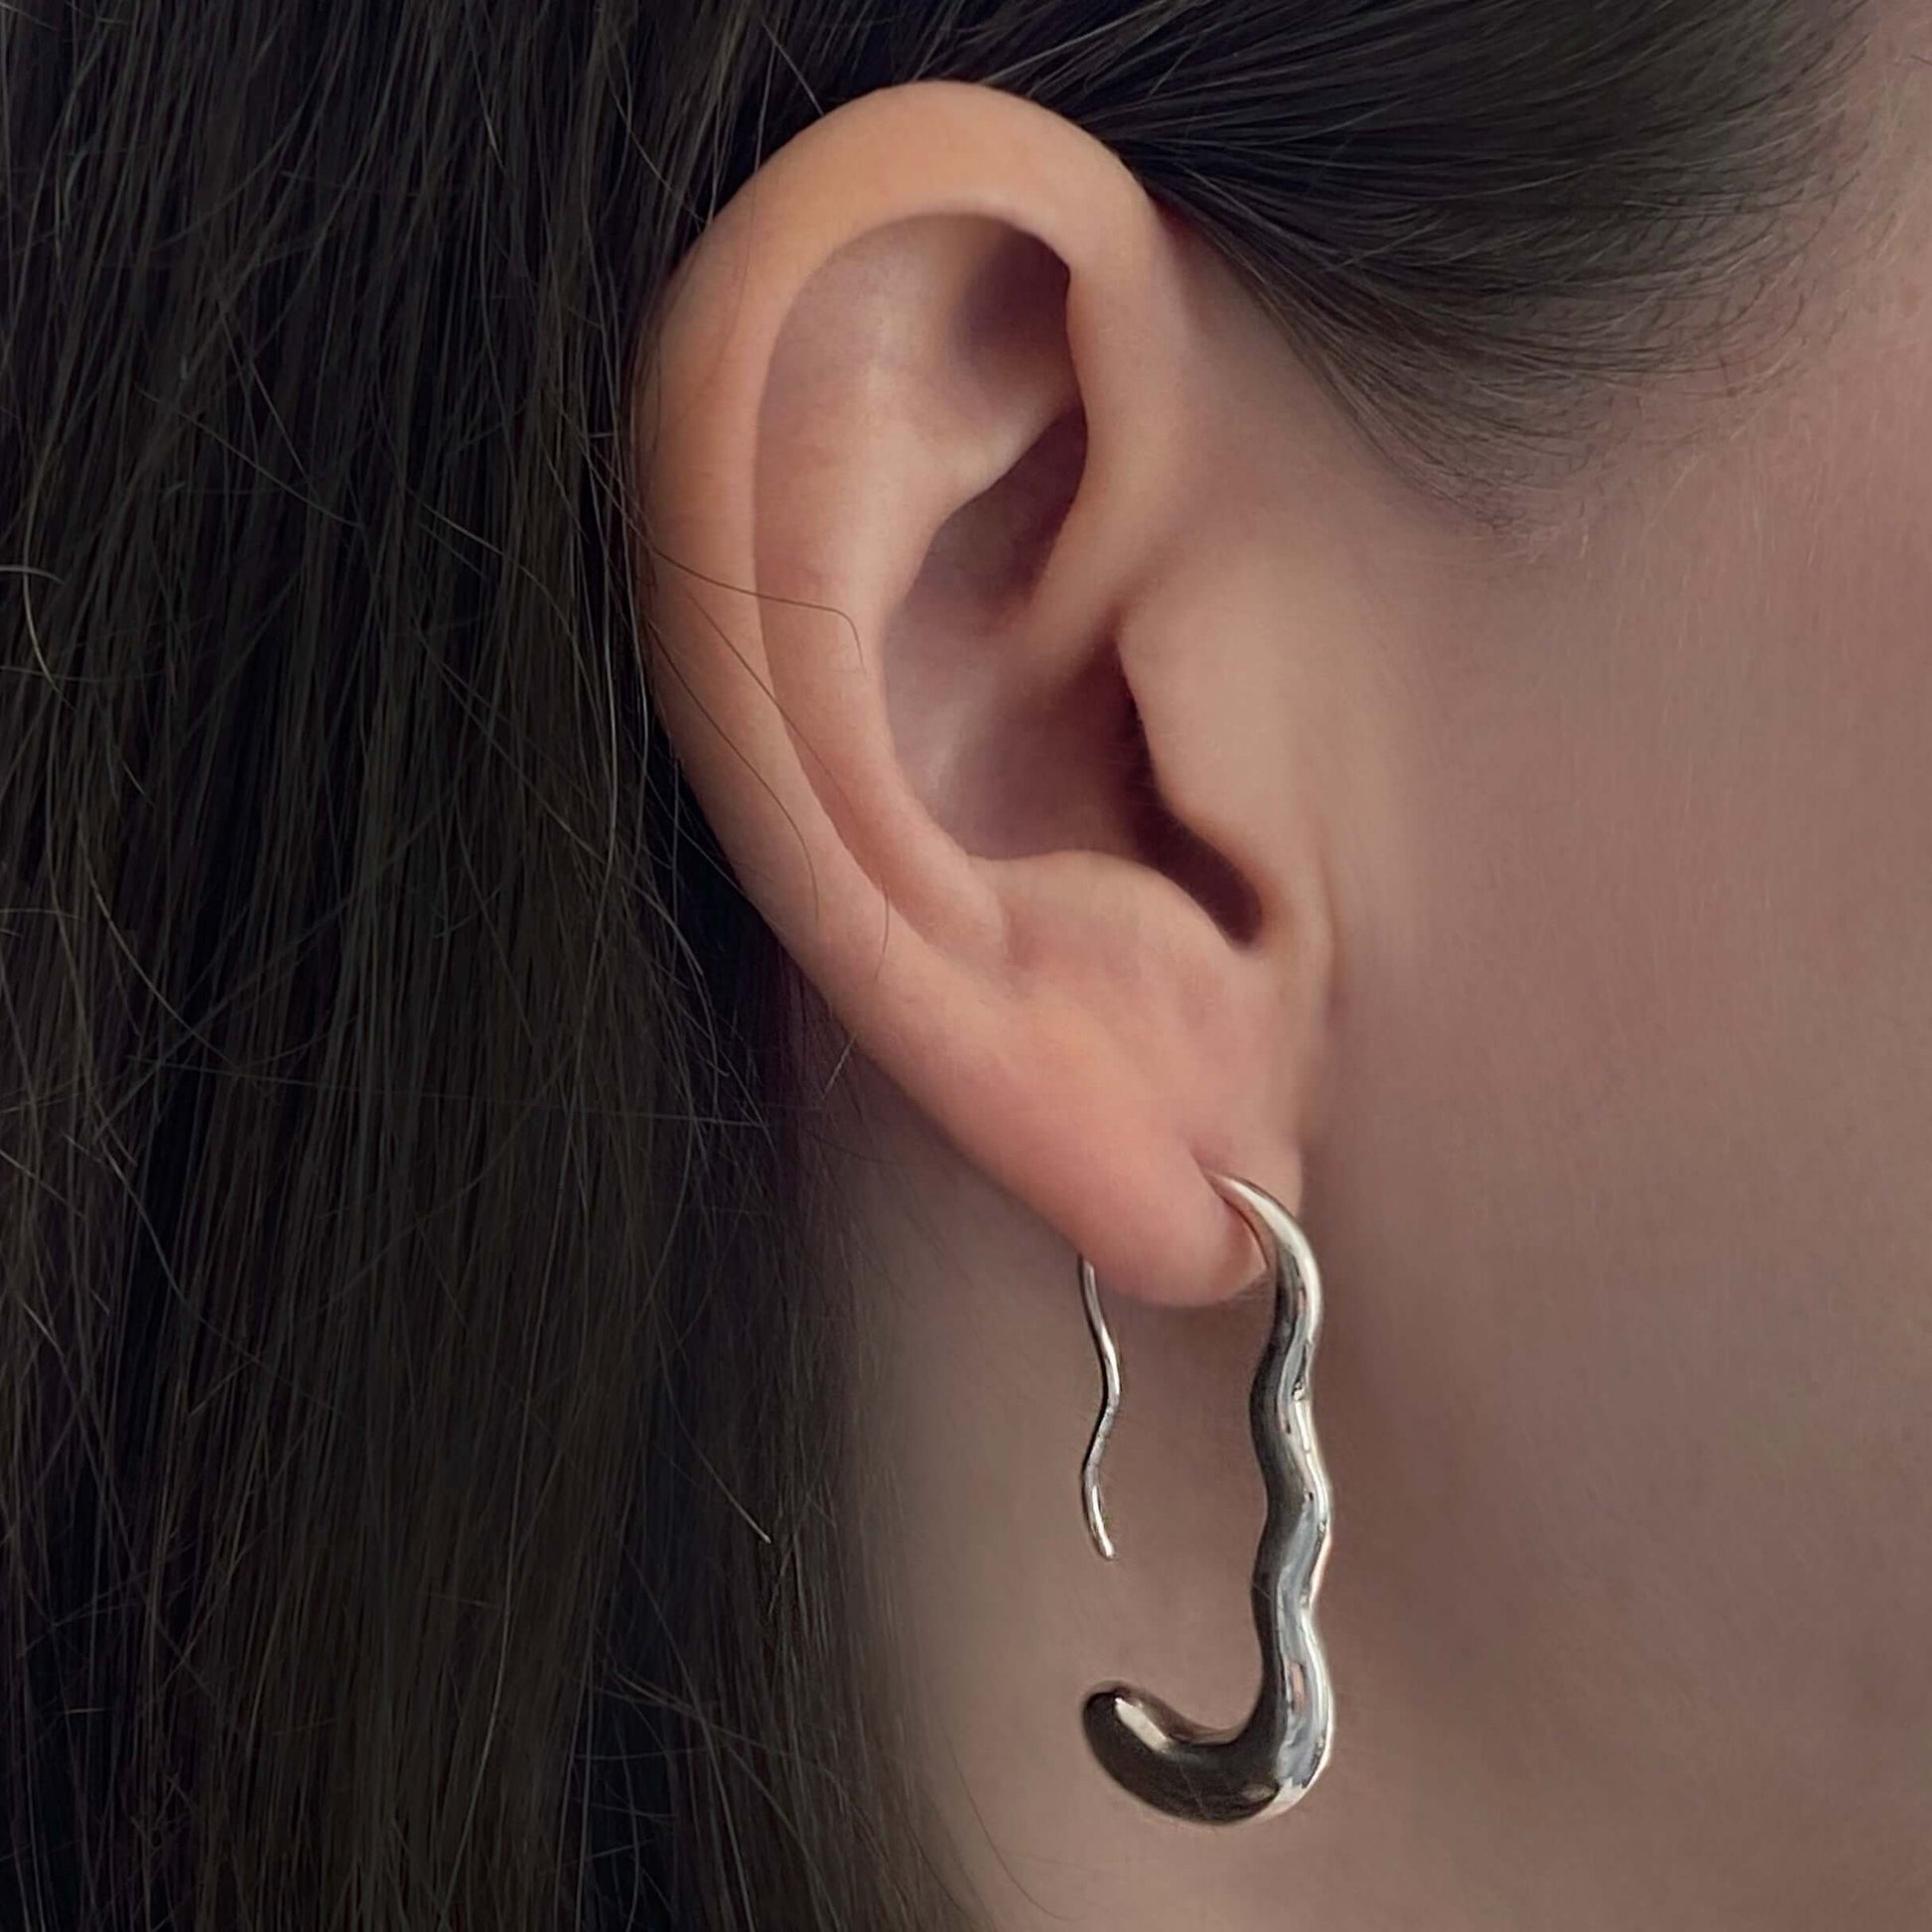 Ear with silver earring